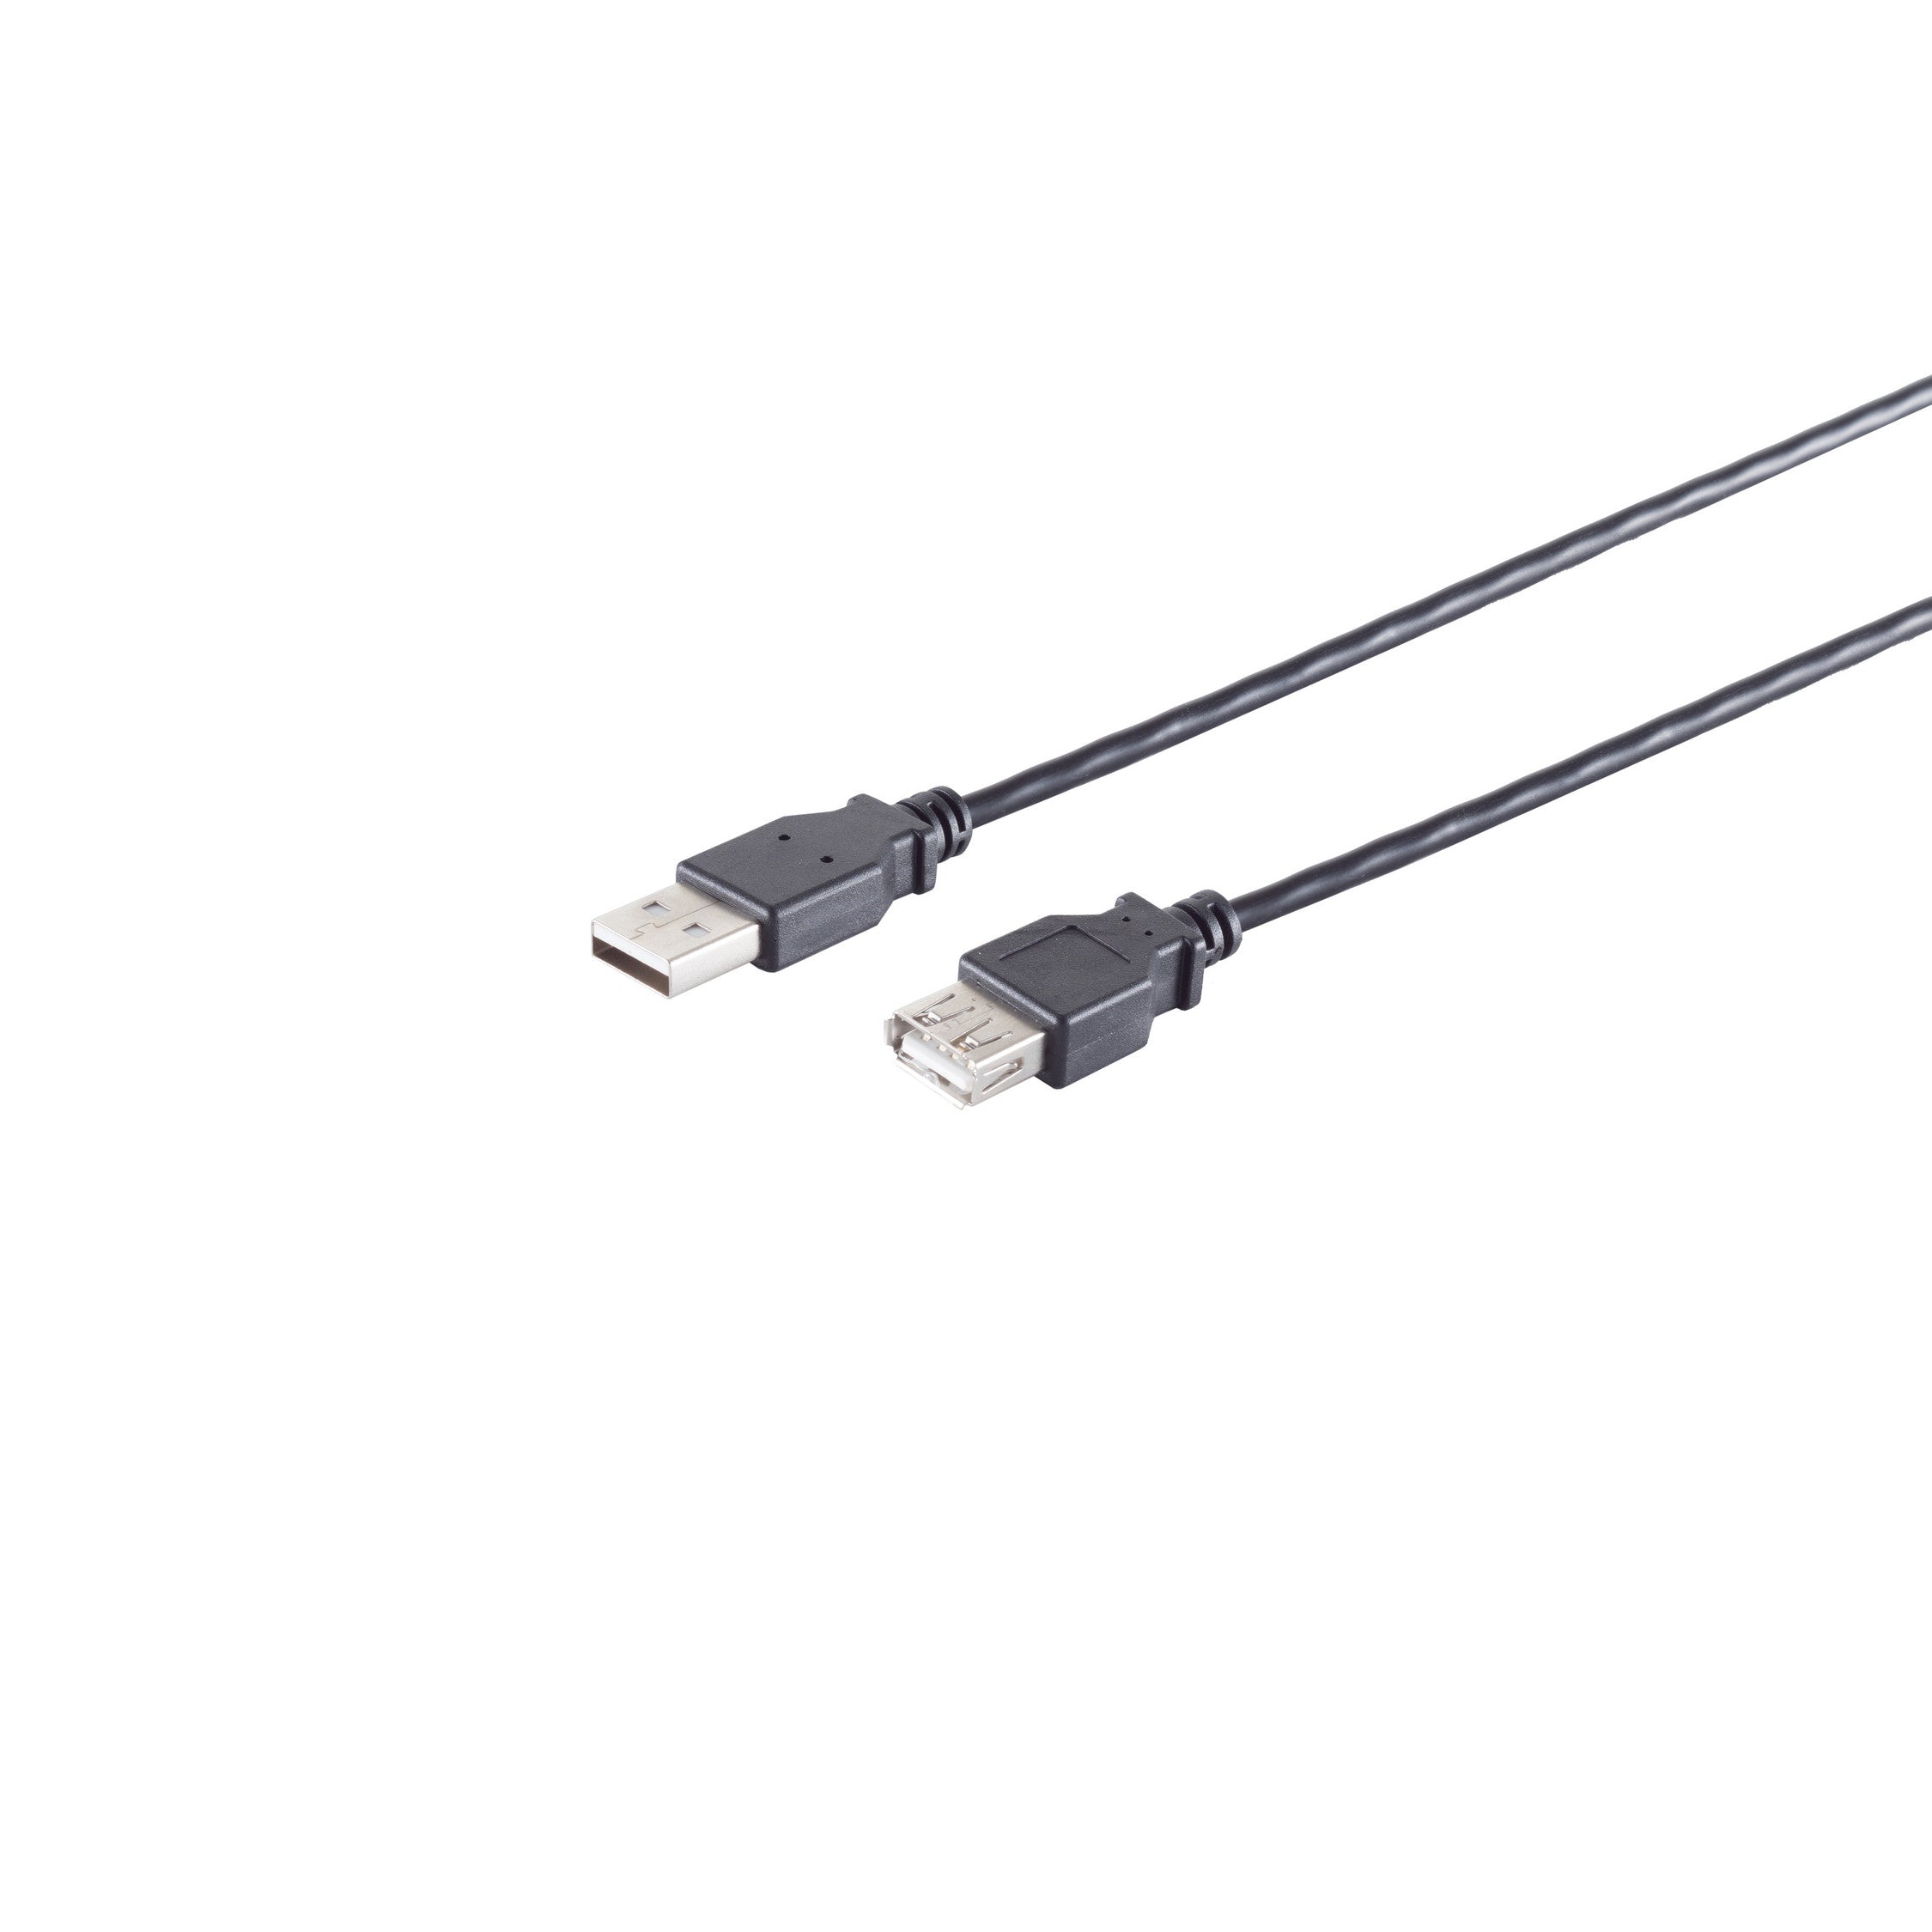 USB High Speed 2.0 Verlängerung, A/A Buchse, USB 2.0, schwarz, 1,0m